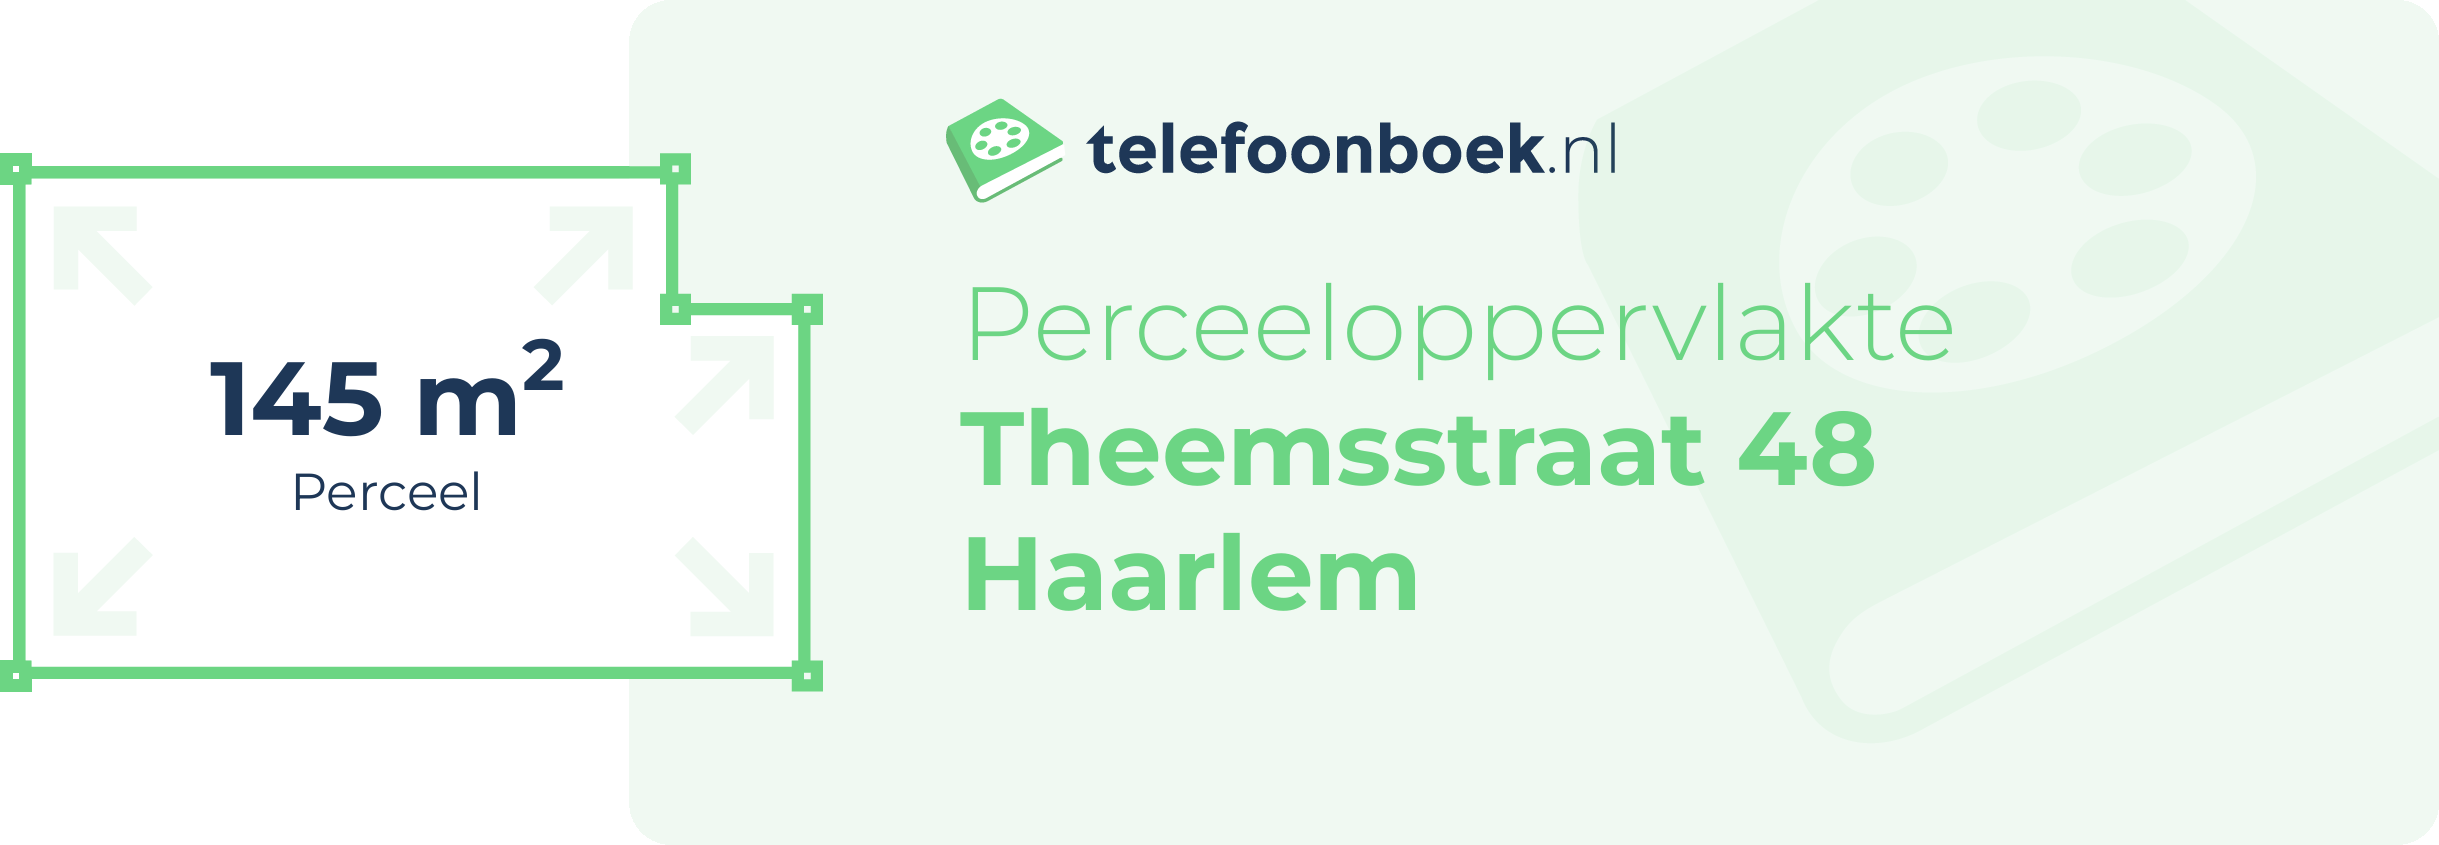 Perceeloppervlakte Theemsstraat 48 Haarlem